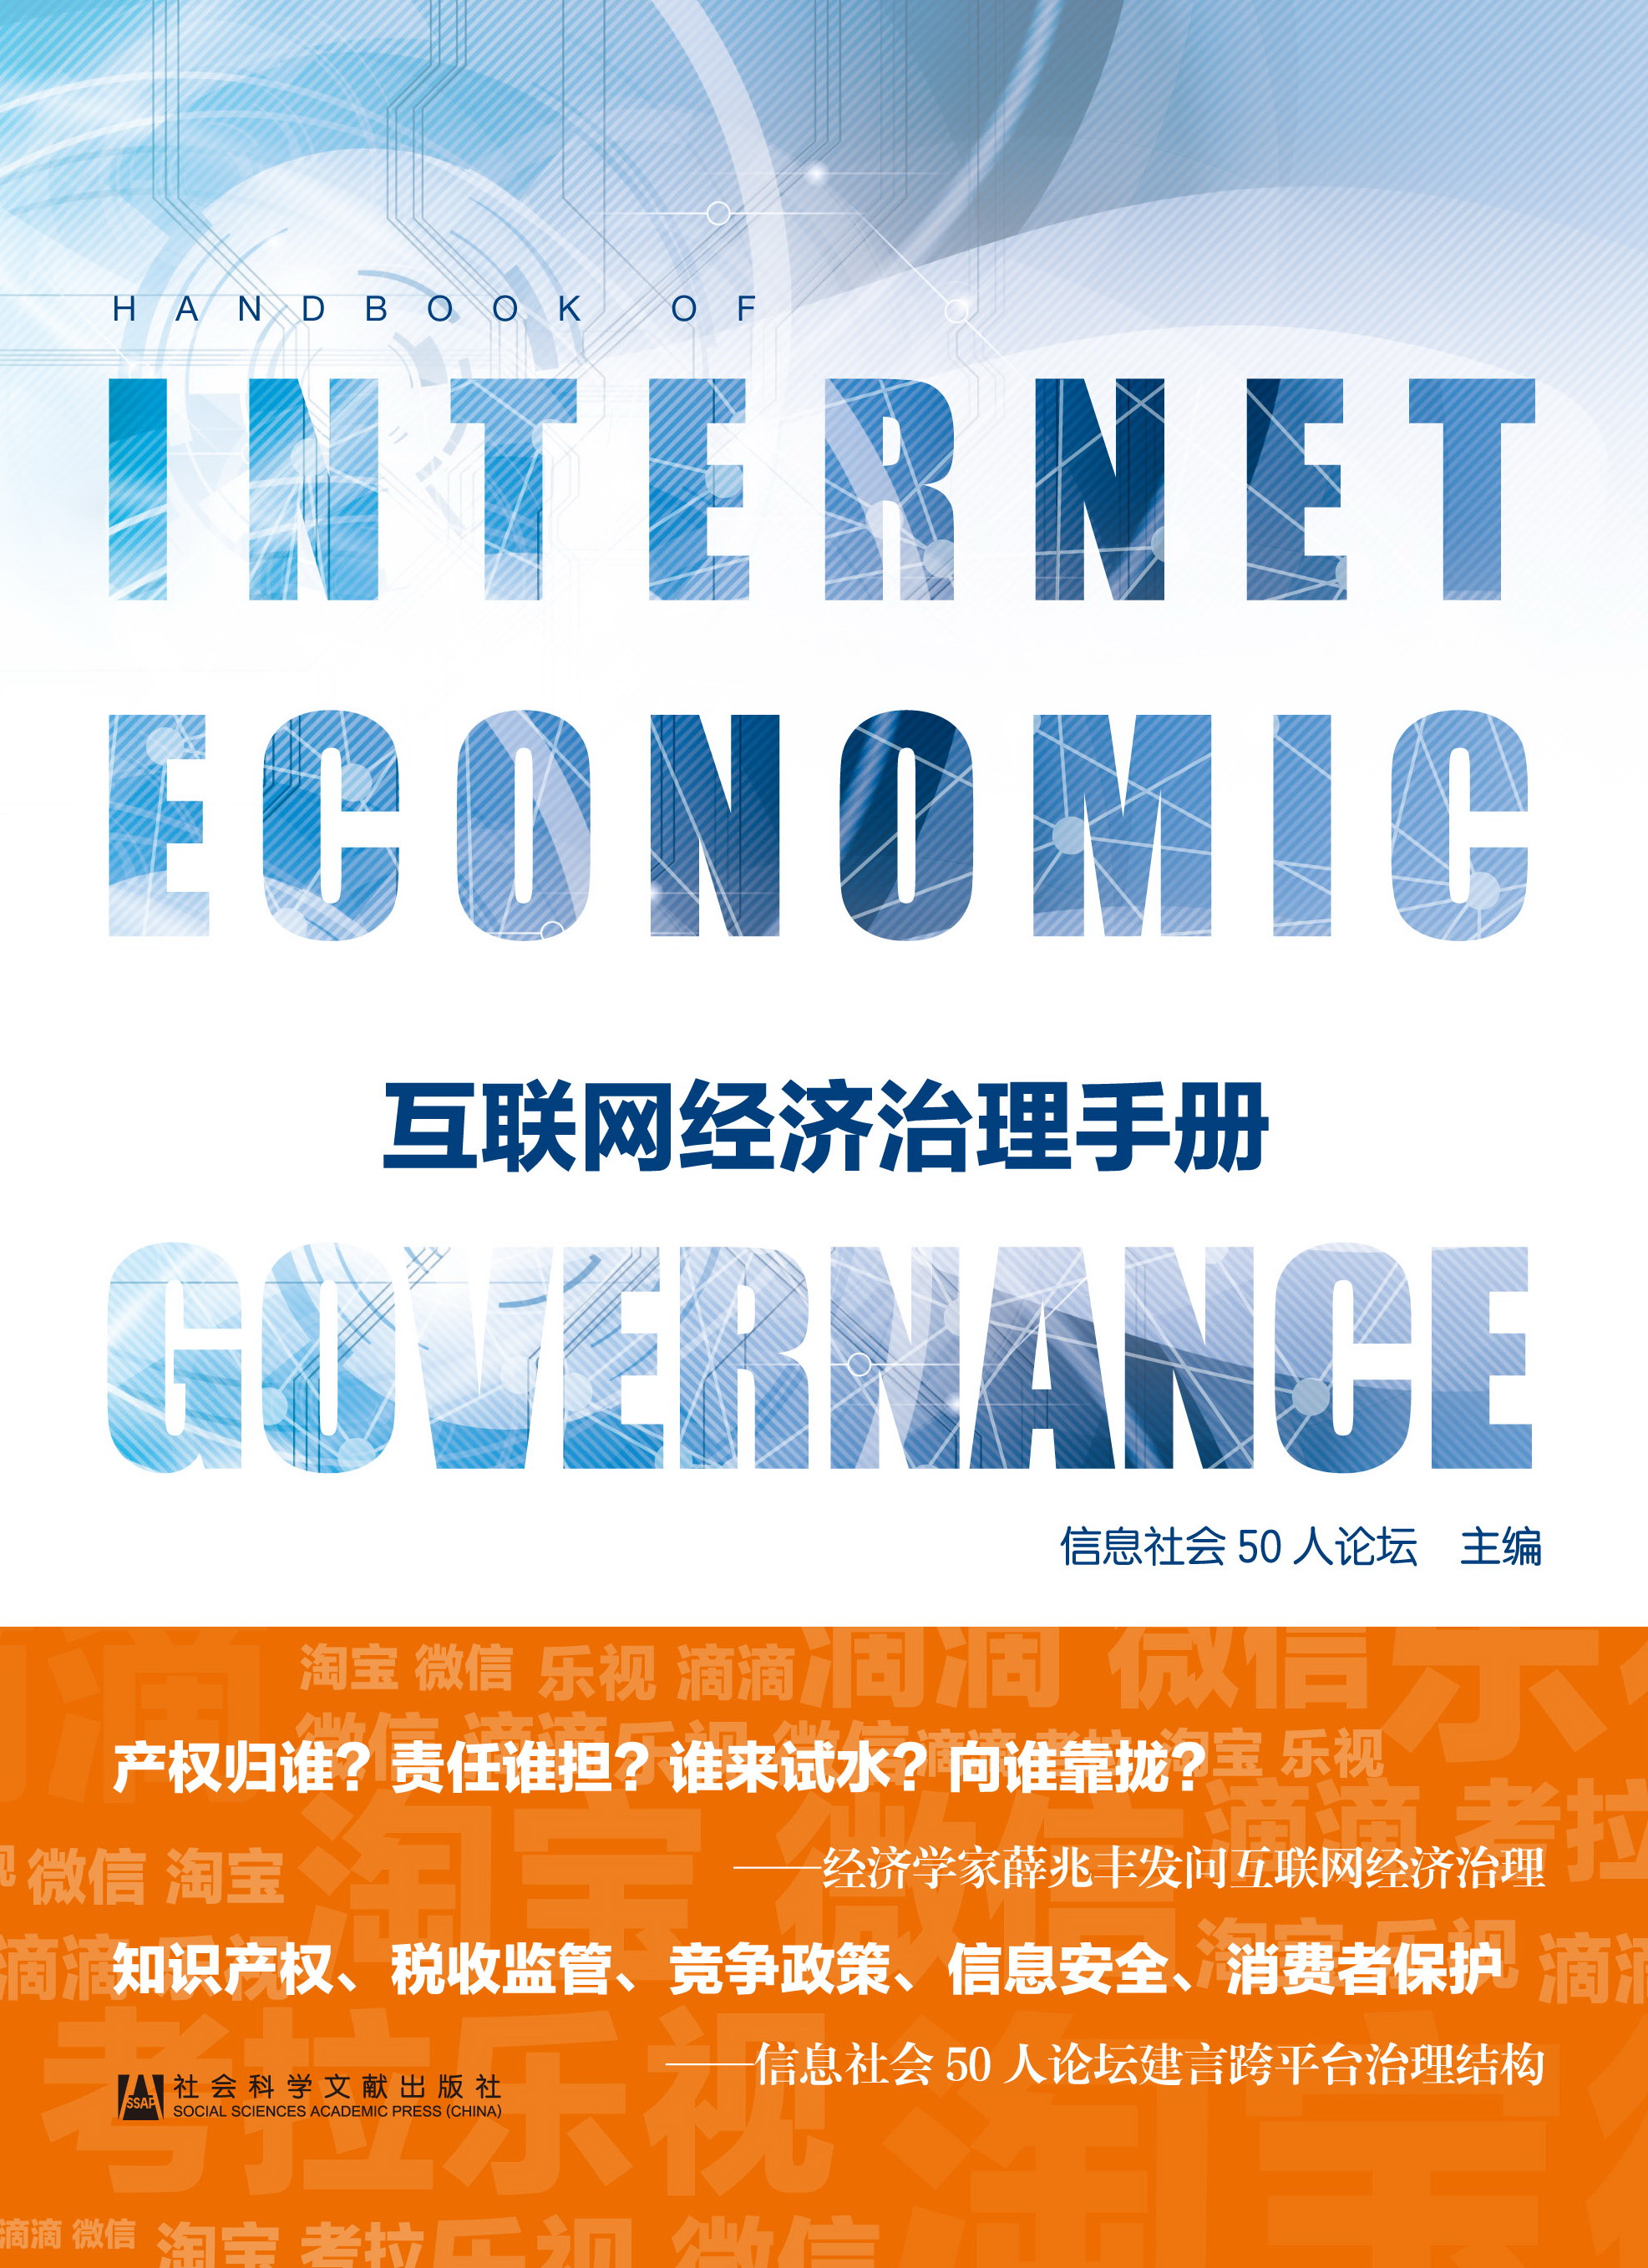 互联网经济治理手册